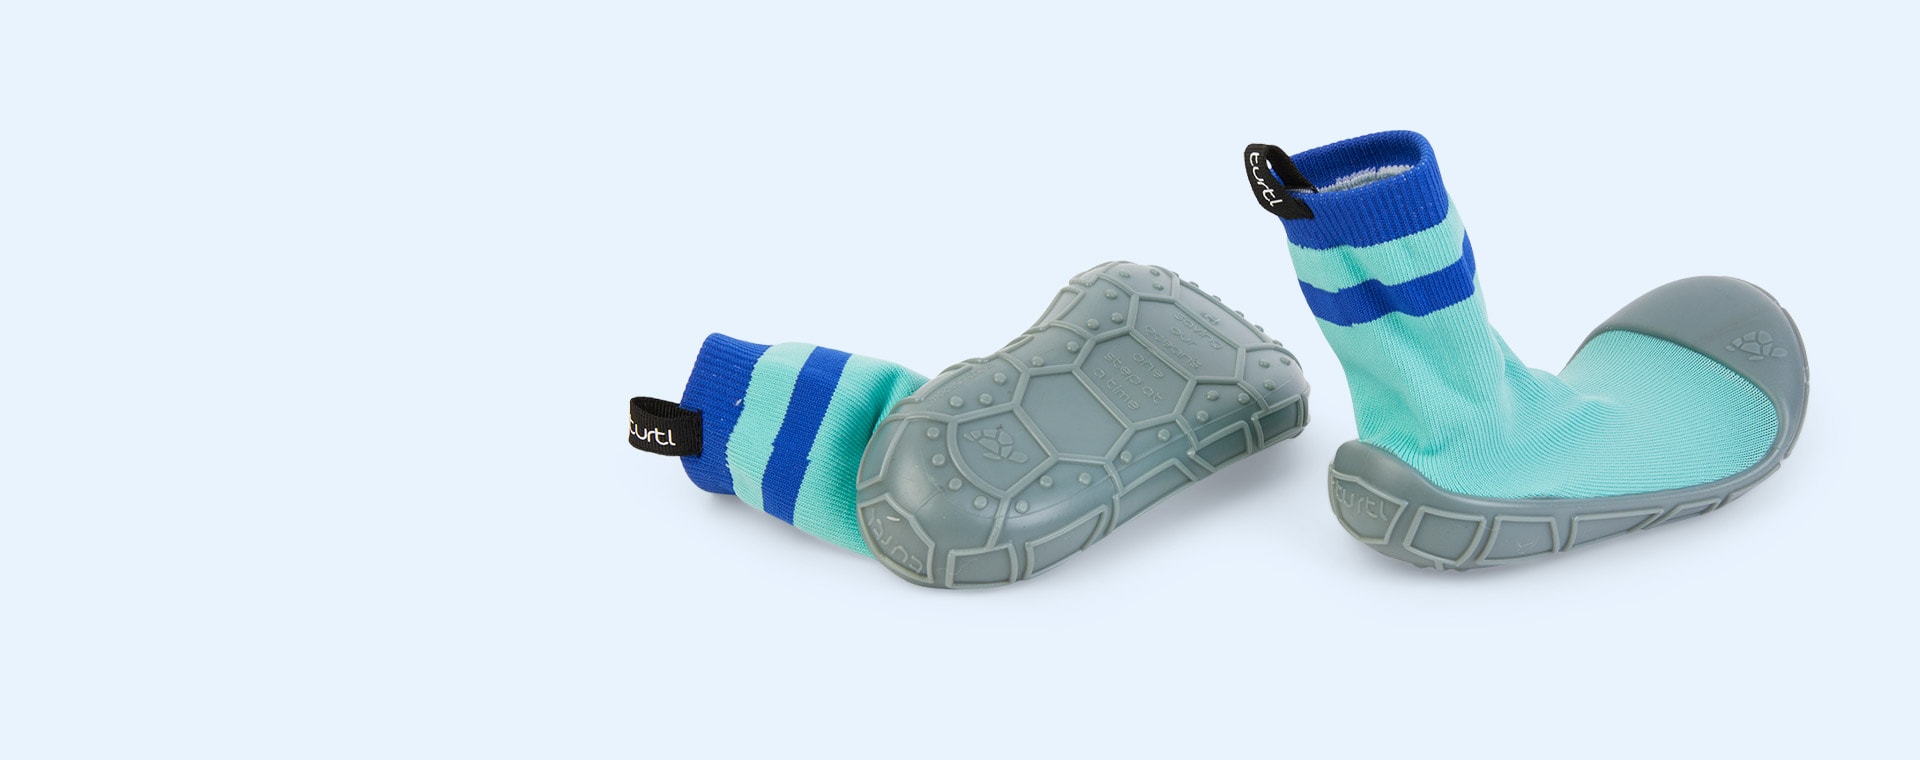 Aqua turtl Kids Slipper Socks